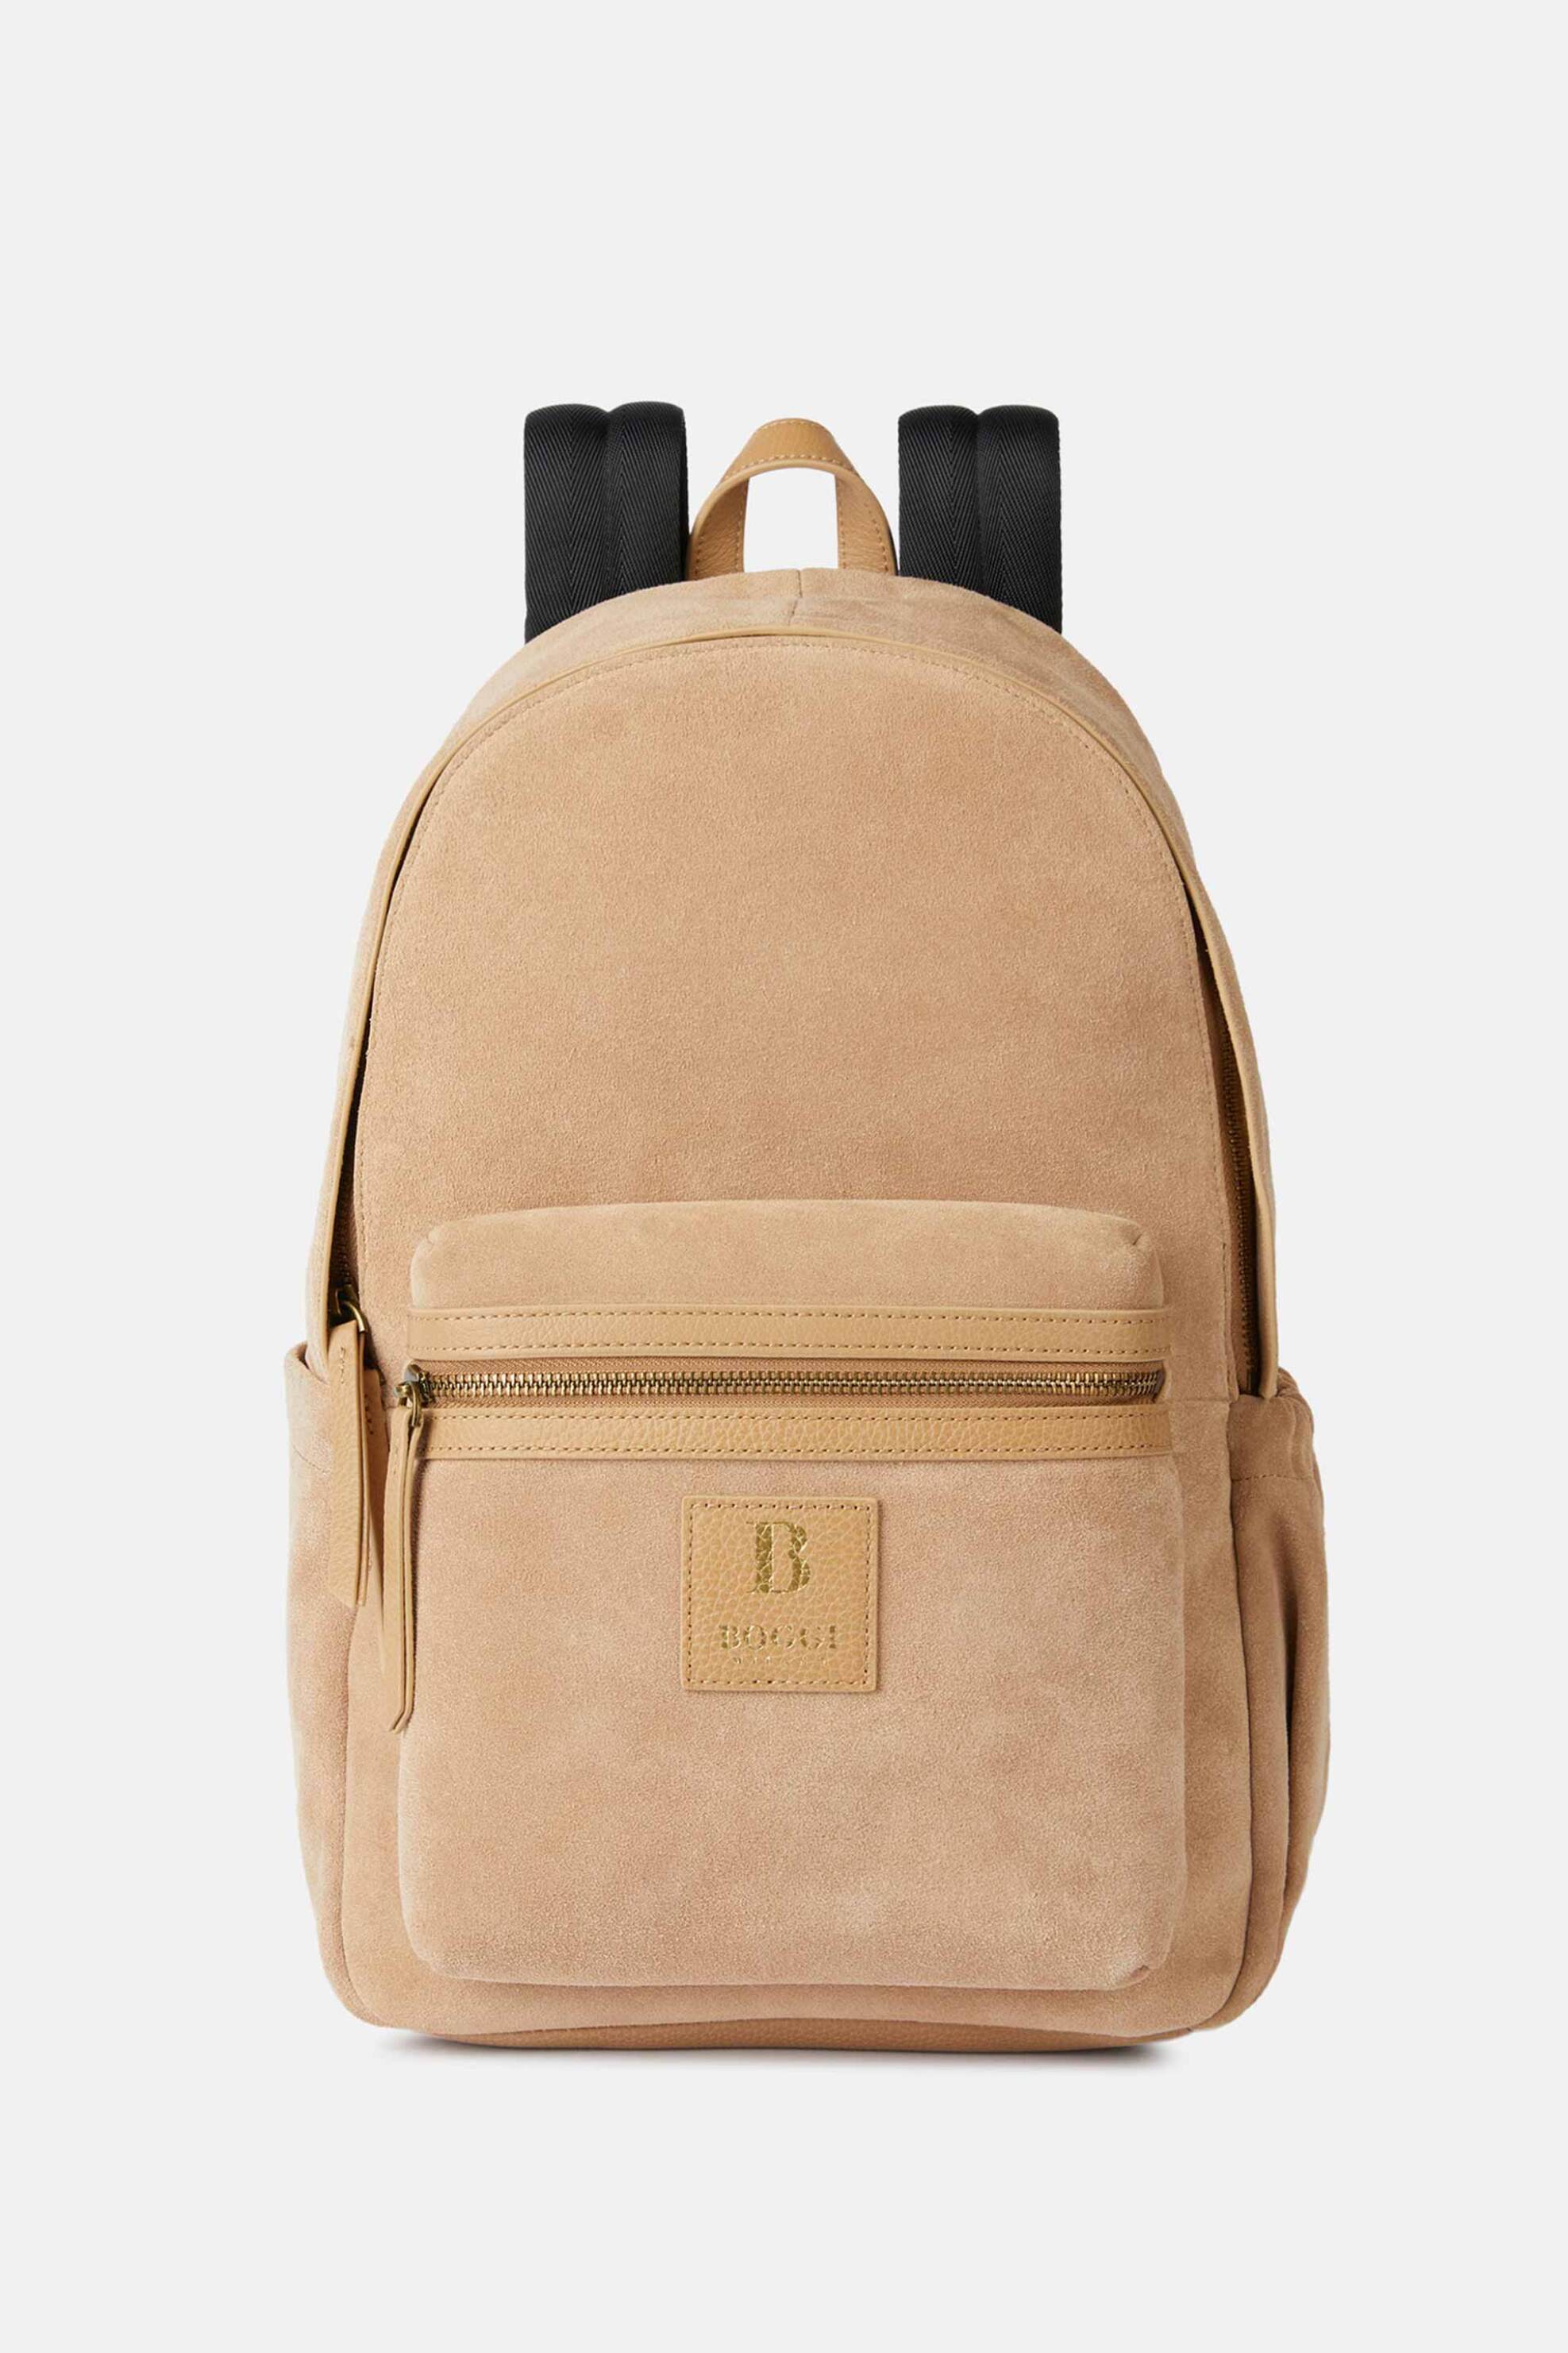 Ανδρική Μόδα > Ανδρικές Τσάντες > Ανδρικά Σακίδια & Backpacks Boggi Milano ανδρικό suede backpack με logo patch - BO24P060502 Καμηλό